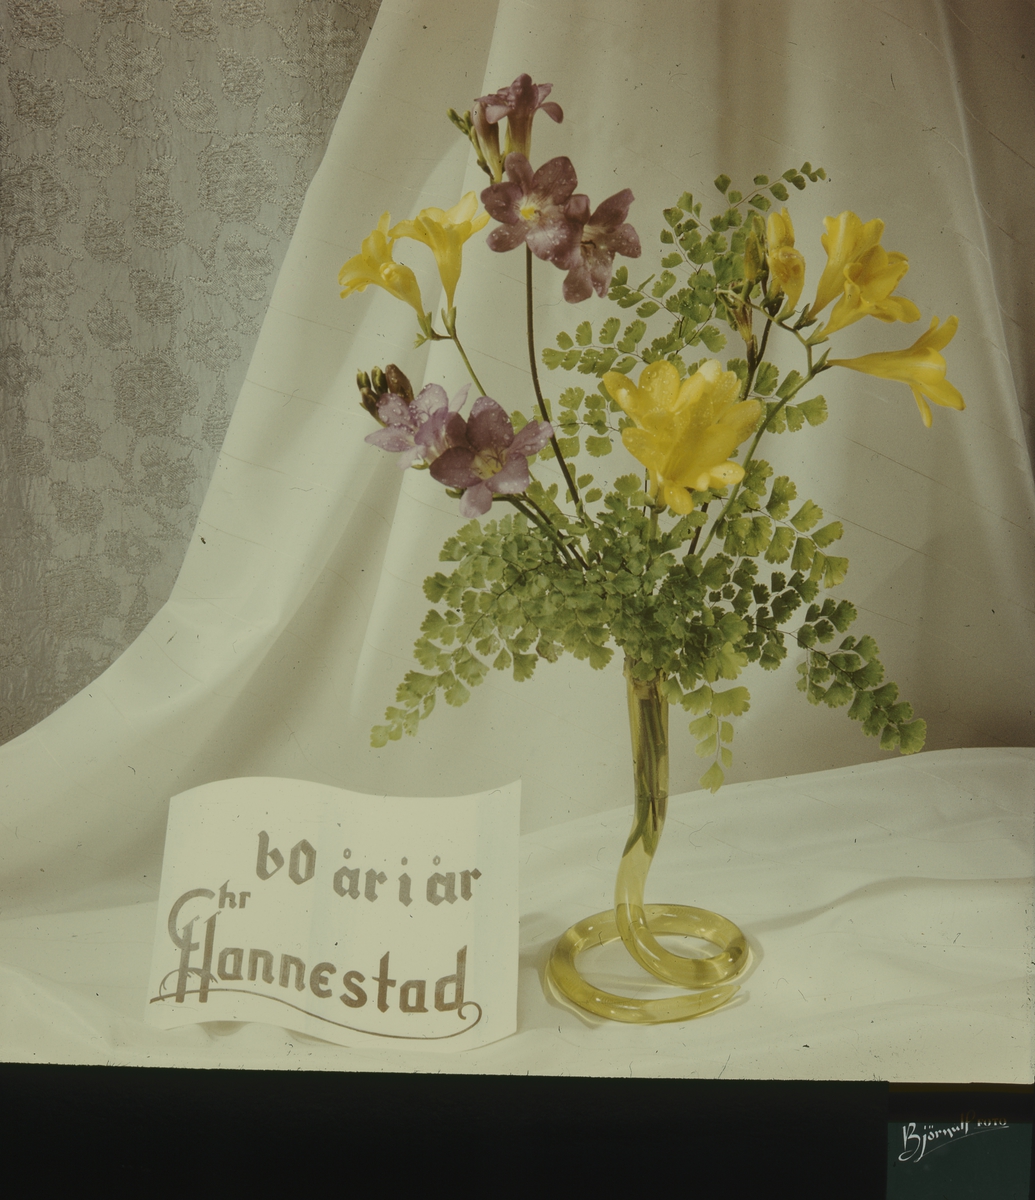 Kinoreklame fra 1962 med blomsteroppsats av fresia i gullforgylt vase, skilt med påskriften "60 år i år" og Chr. Hannestad sin logo, med hvite draperier i bakgrunnen.